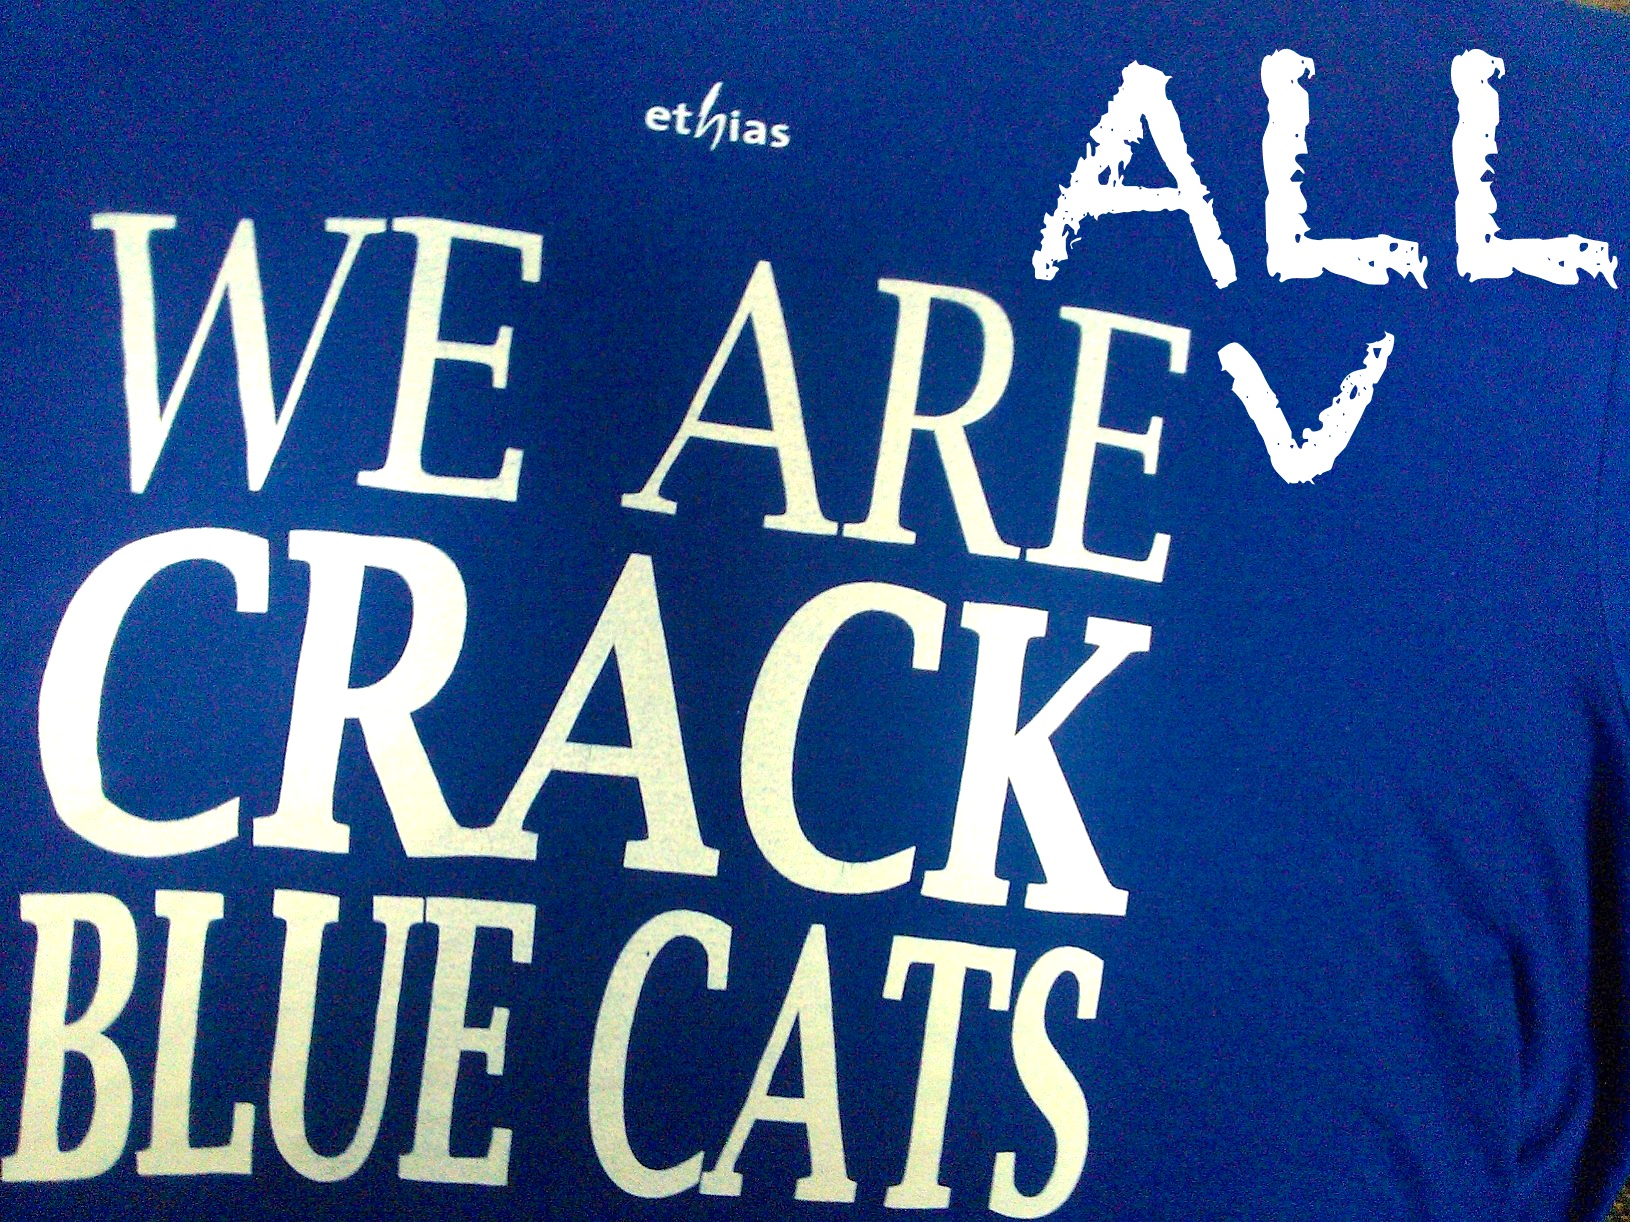 Soutenus par les autres clubs, Crack Blue Cats Ieper veut rester en division I